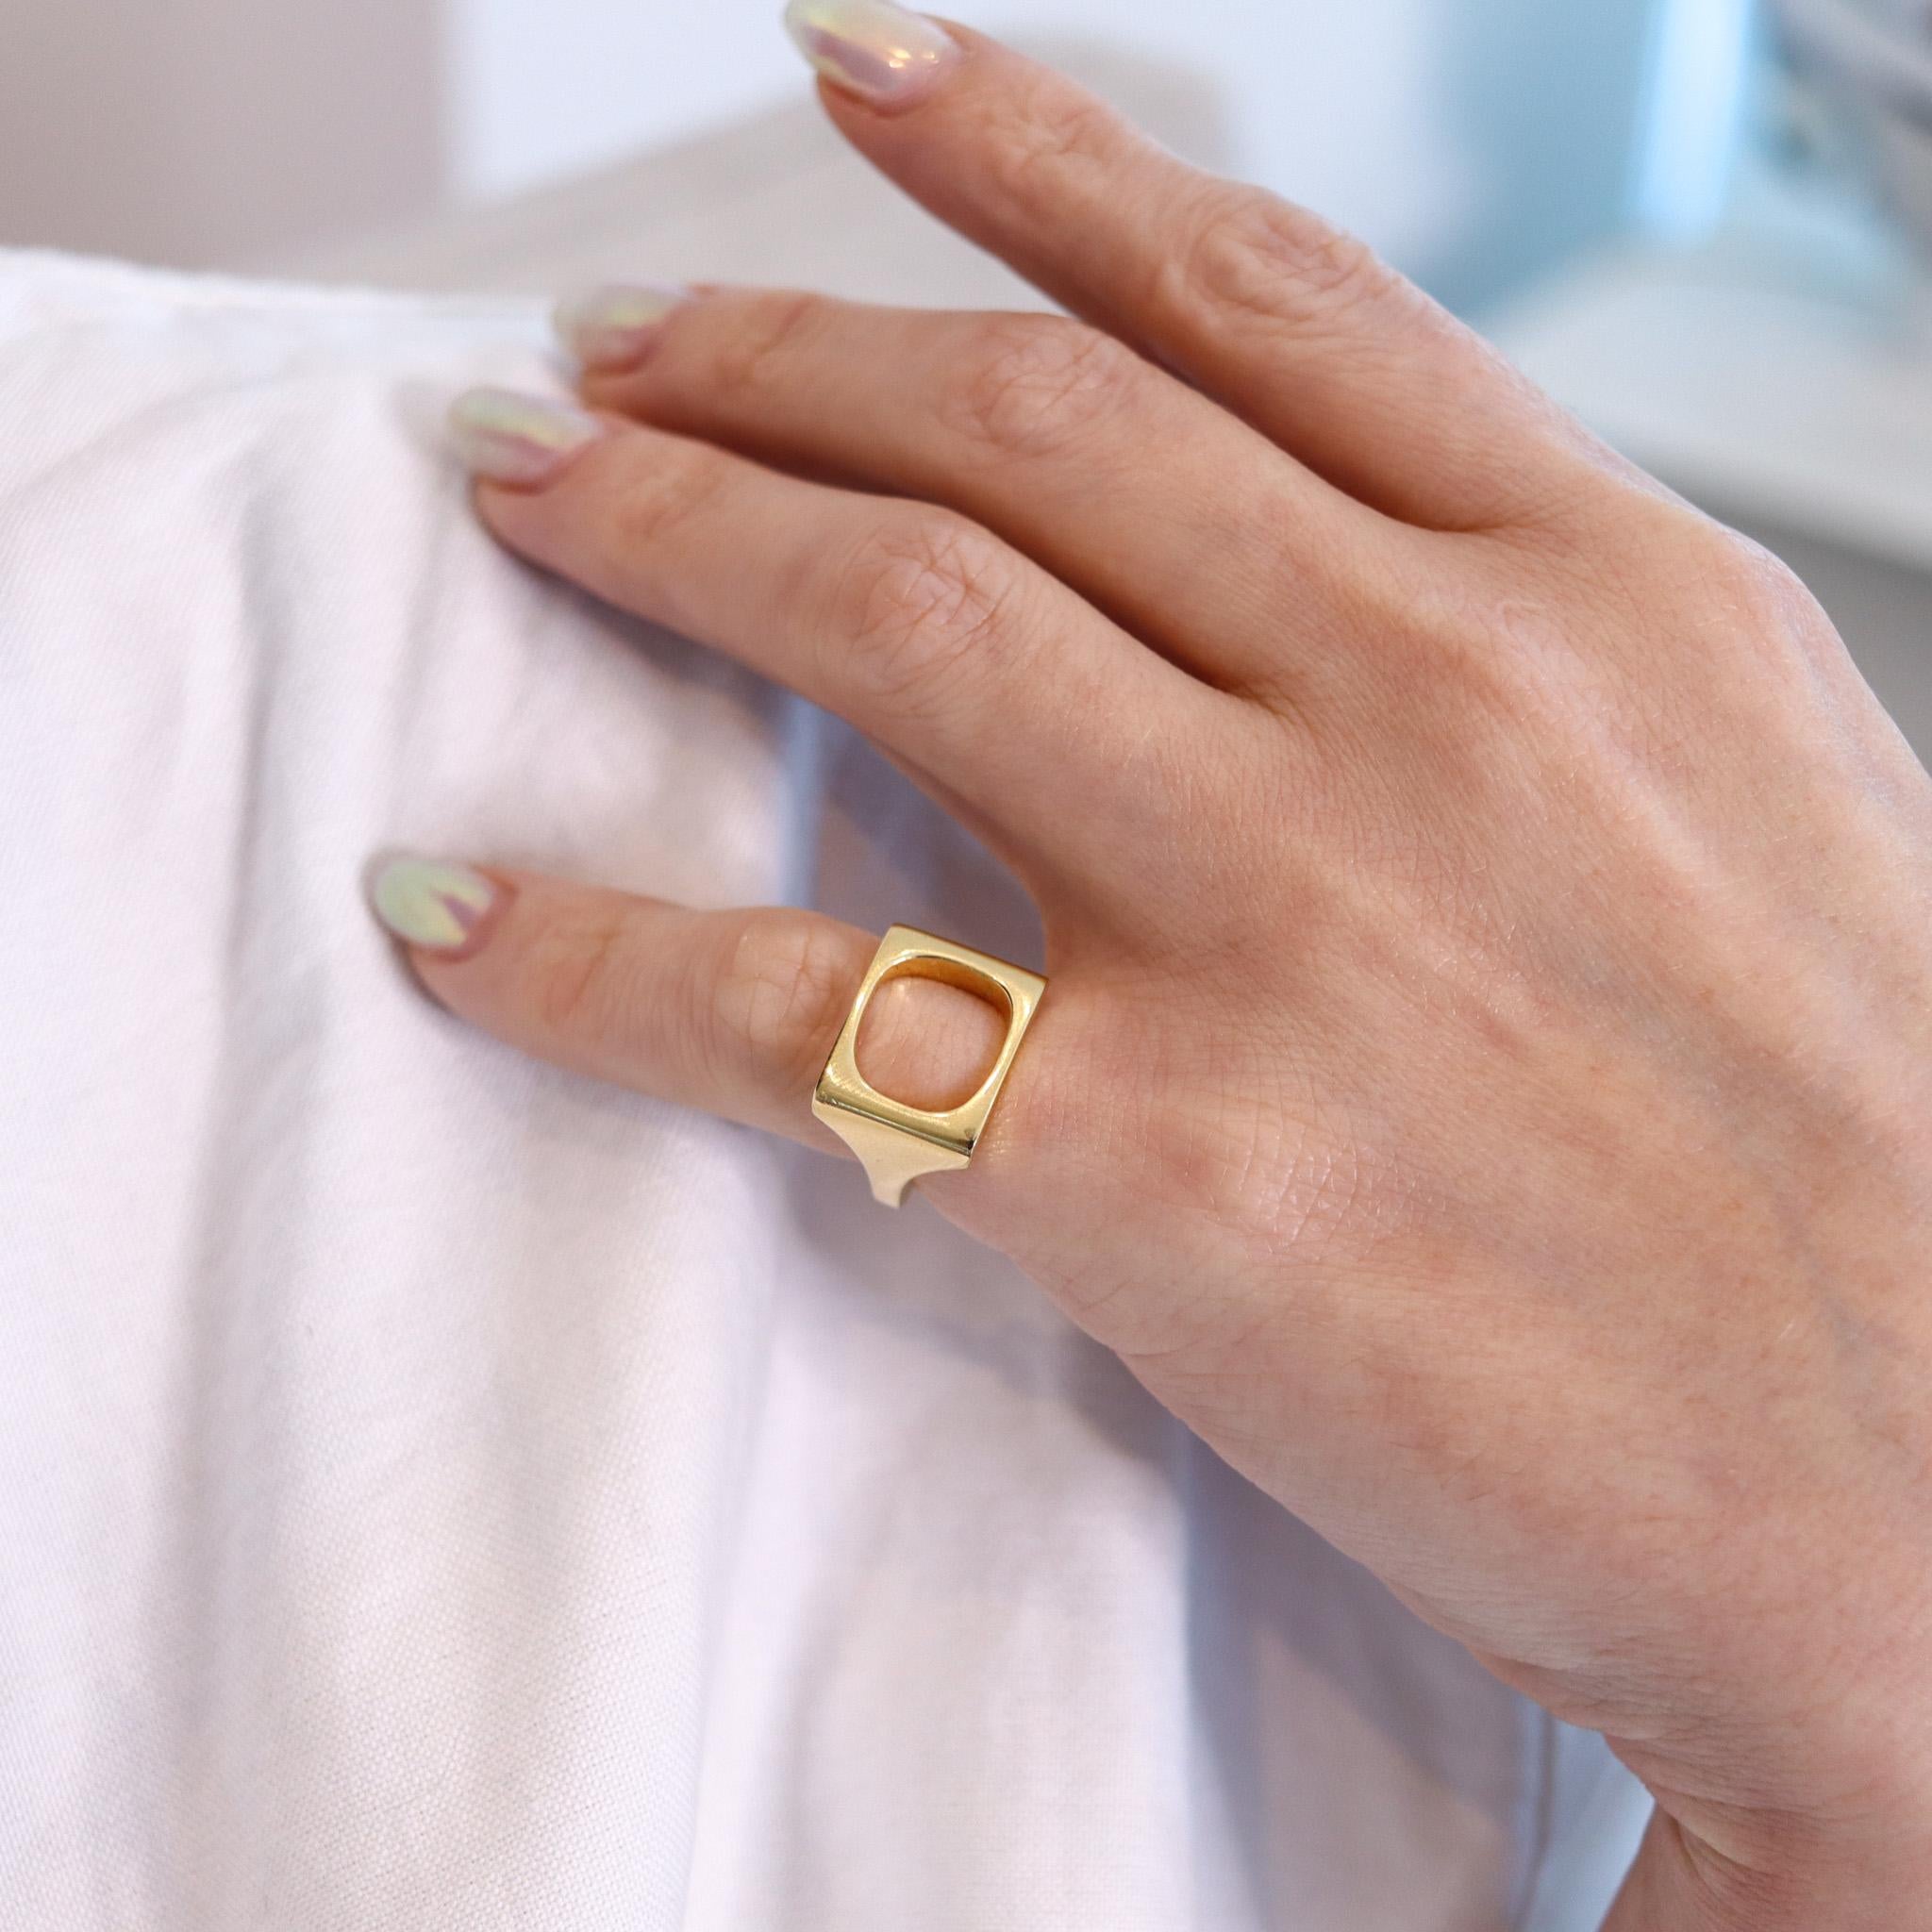 Geometrischer Ring, entworfen von Jean Dinh Van für Cartier.

Ein wunderschönes und sehr anspruchsvolles Design, das der Künstler und Schmuckdesigner Jean Dinh Van in den 1970er Jahren für das Pariser Schmuckhaus Cartier entwarf. Dieser schöne Ring